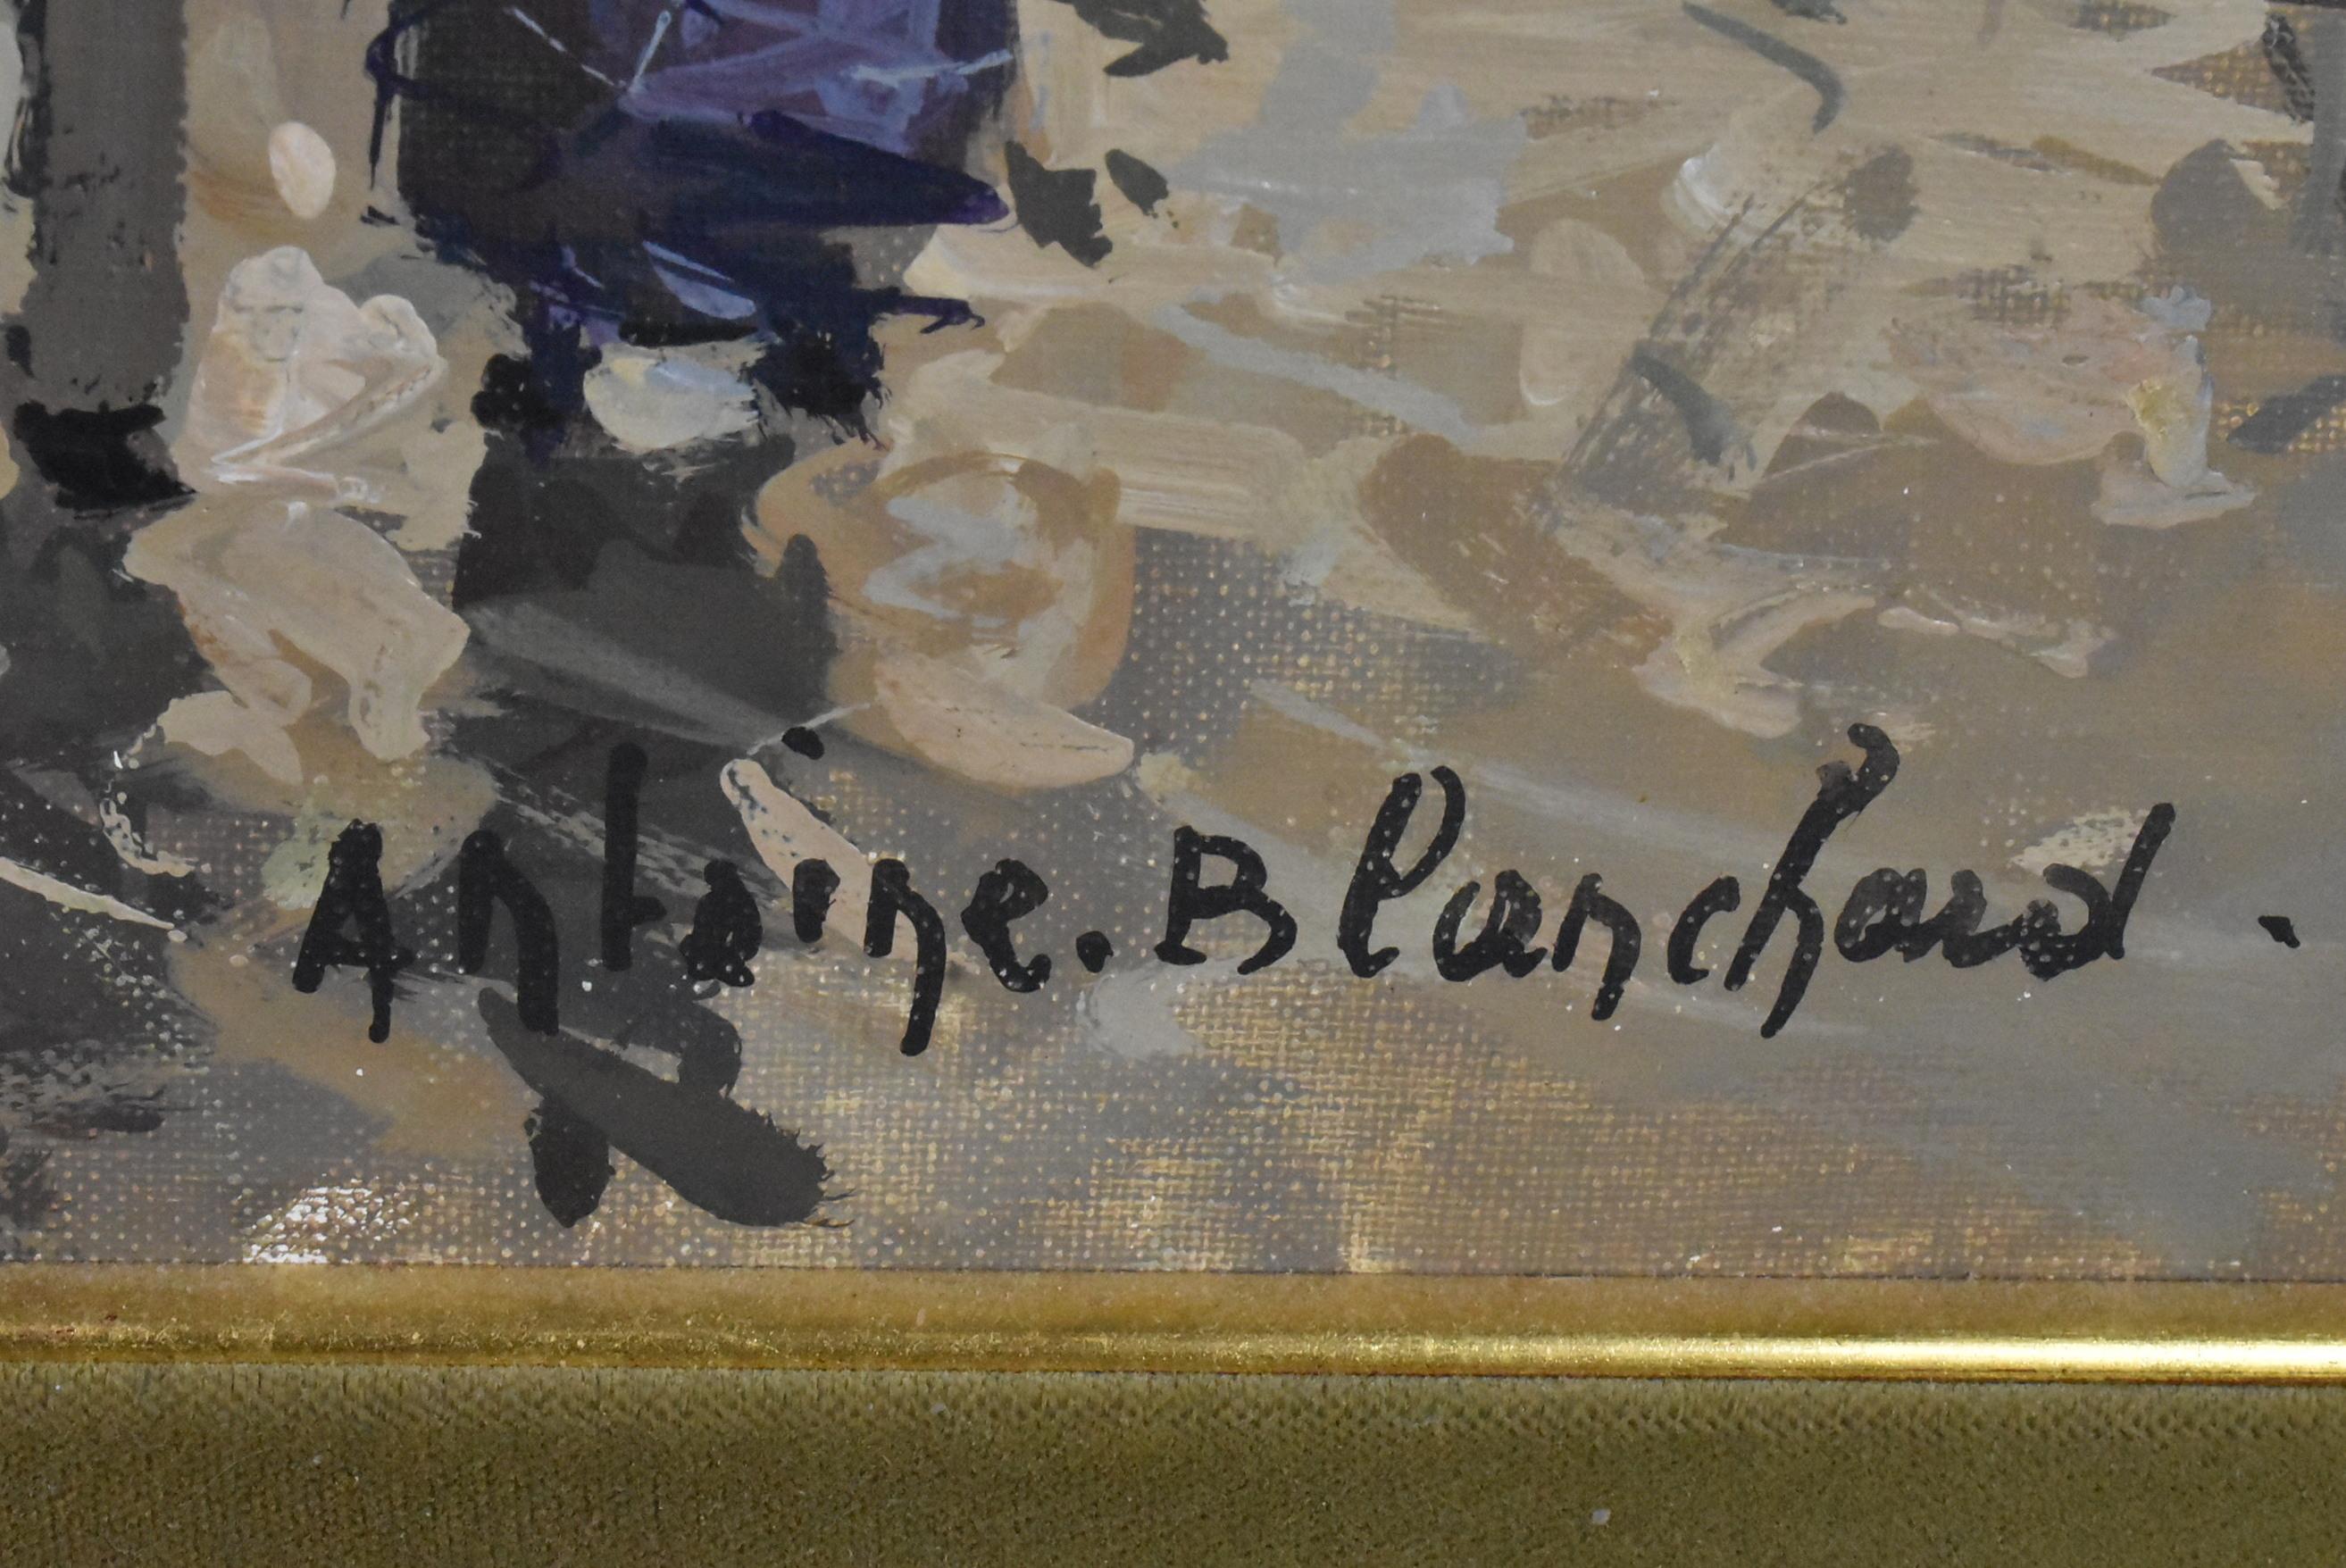 Impressionistisches Ölgemälde auf Leinwand des französischen Künstlers Antoine Blanchard (1910-1988). Straßenszene La Madeleine Boulevard Paris Frankreich. Tolle Bewegung und Farbenspiel. Signiert unten rechts. Bildgröße 35,5